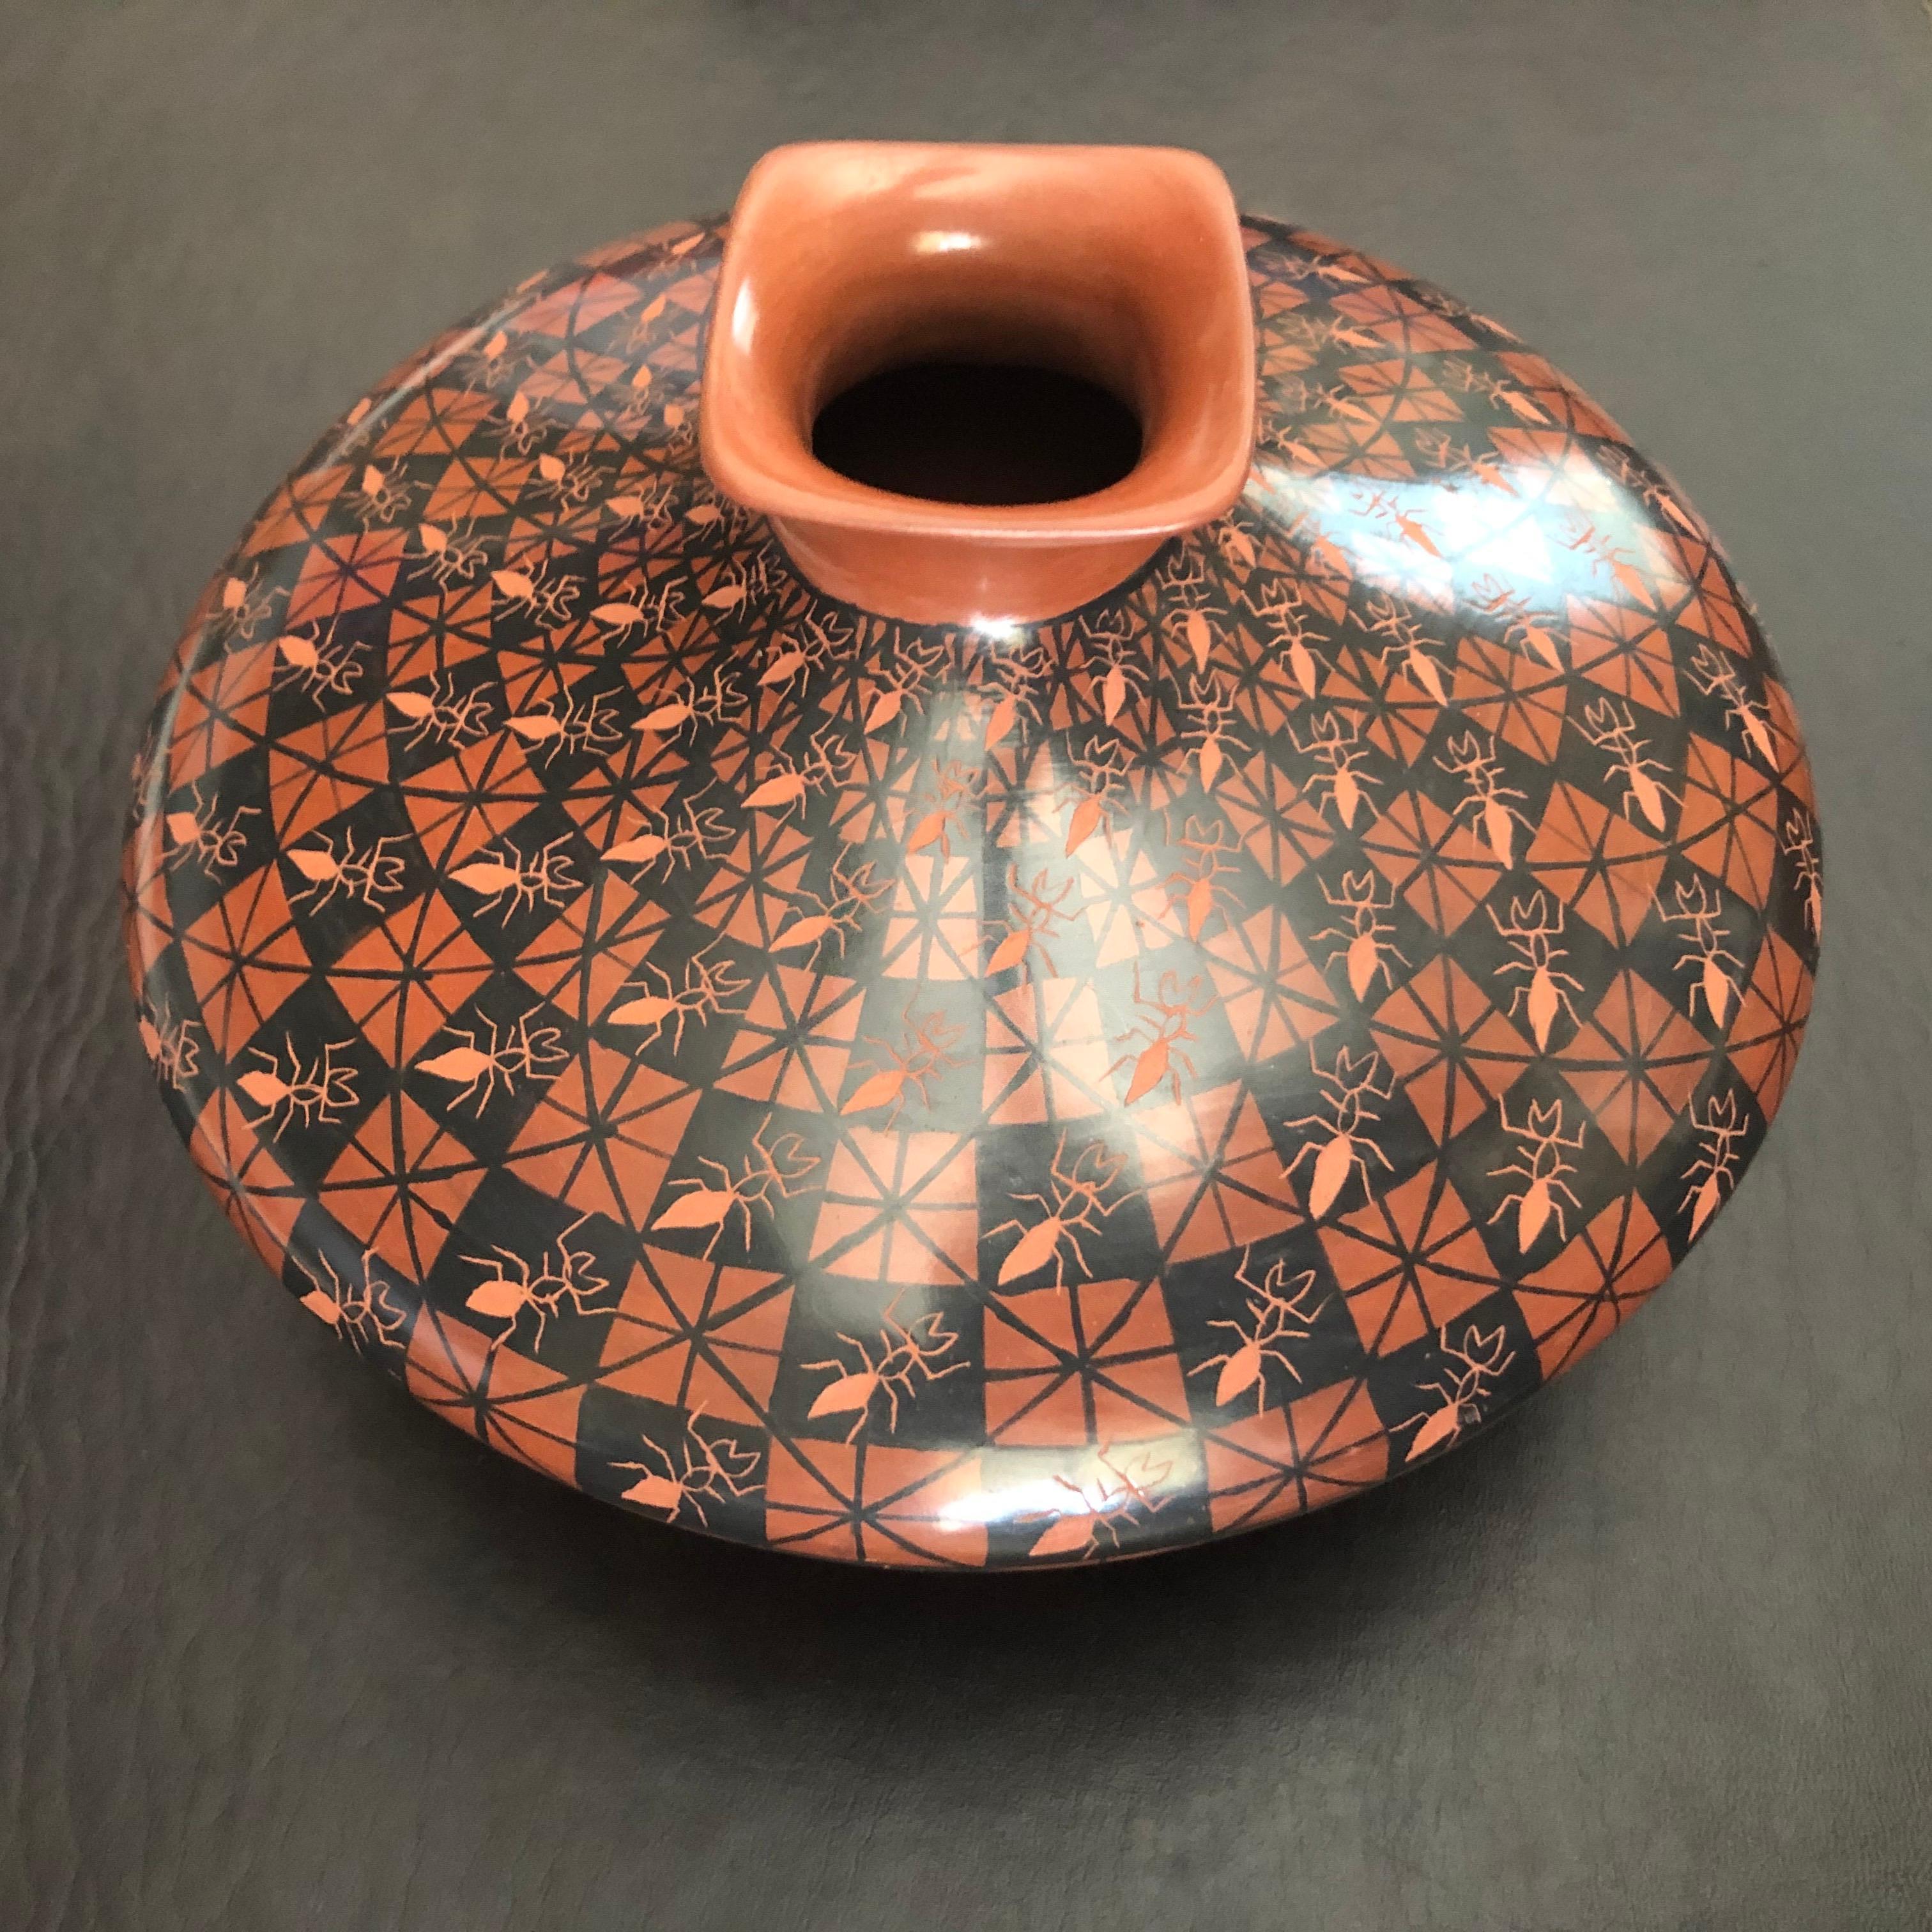 Magnifique vase / pot à graines polychrome à motif de fourmis Mata Ortiz, tourné à la main par Yoly Ledezma, vers les années 1990. Cette pièce exquise présente un design et des couleurs magnifiques et est tournée de manière exquise.

La poterie Mata